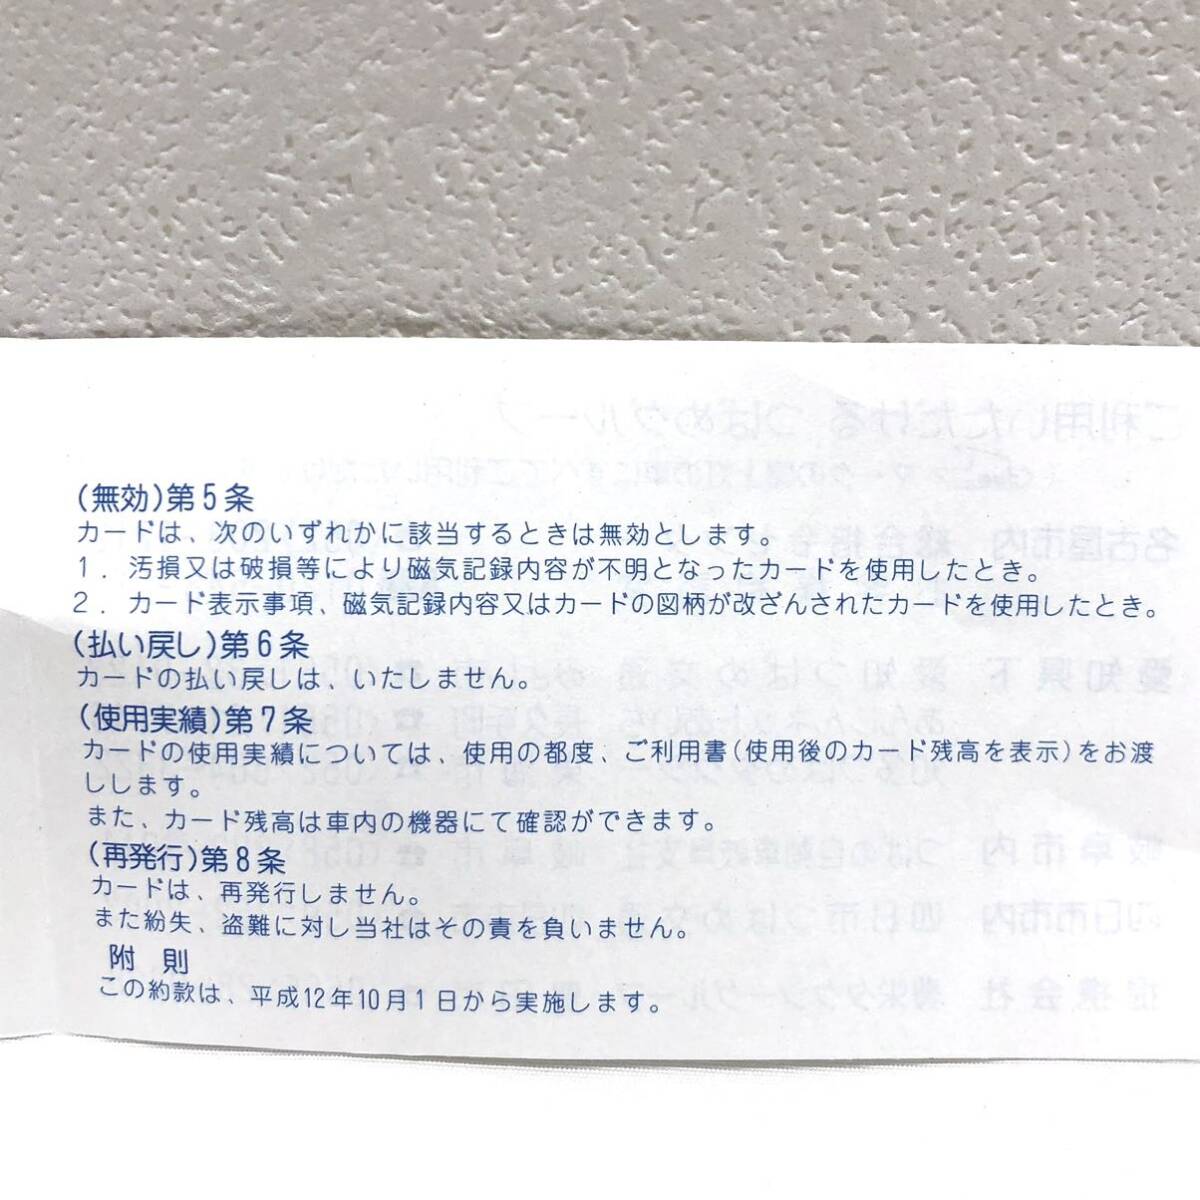 （M3582他)【未使用】 つばめタクシー プリペイドカード スマタク 額面15750円 の画像6